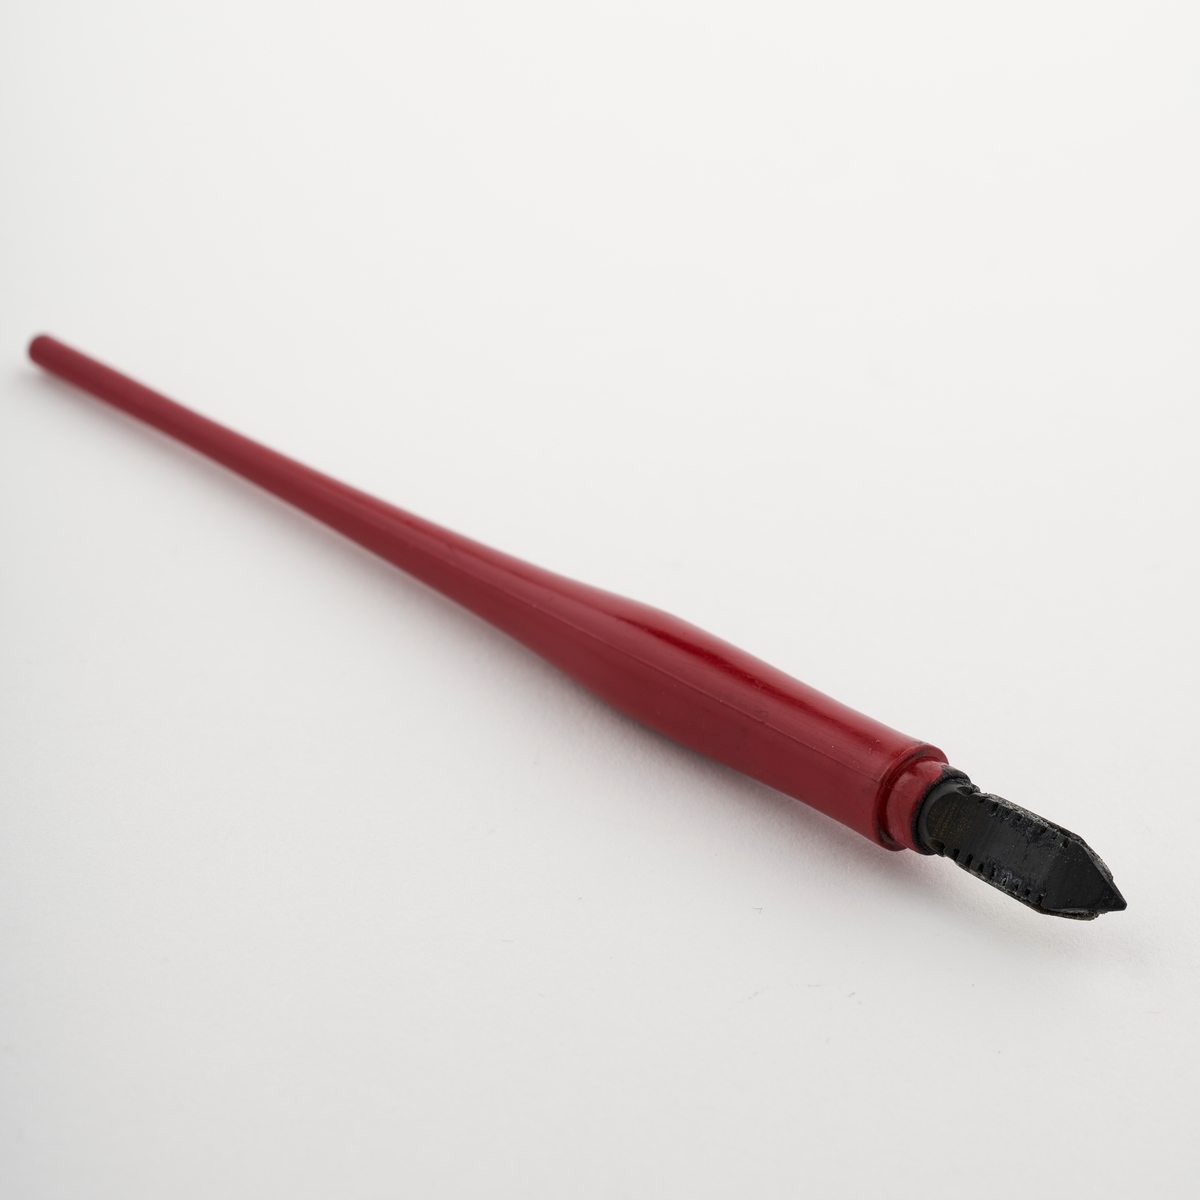 Fyllepenn med langt skaft til å holde i og en pennesplitt til å dyppe i blekk og skrive med.

NAV-samlingen er en gruppe av gjenstander som har vært anvendt på sosialkontoret (Aetat - NAV) i Skedsmo kommune.